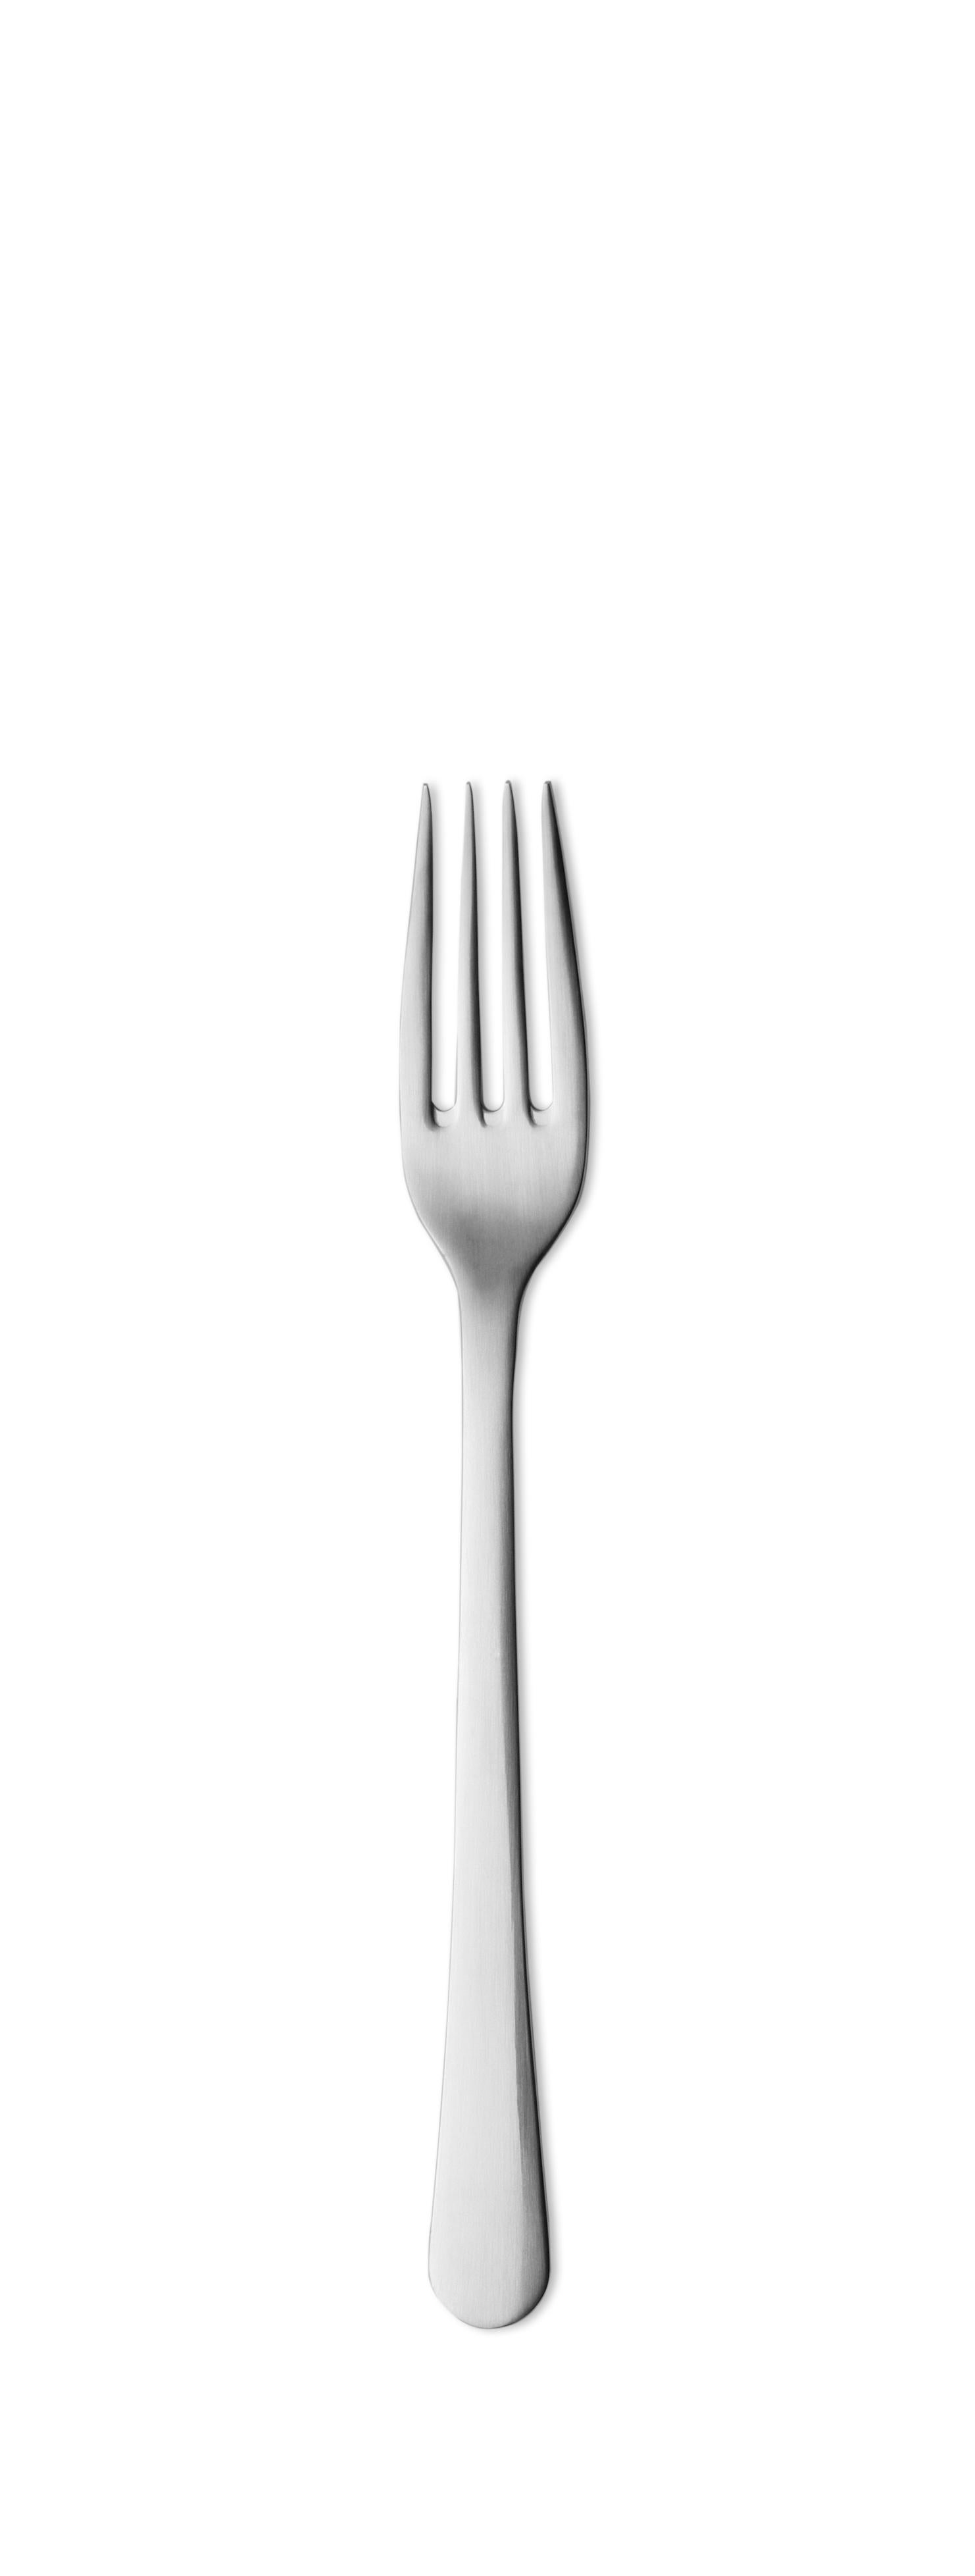 Georg Jensen Copenhagen Dinner Fork in Stainless Steel by Grethe Meyer